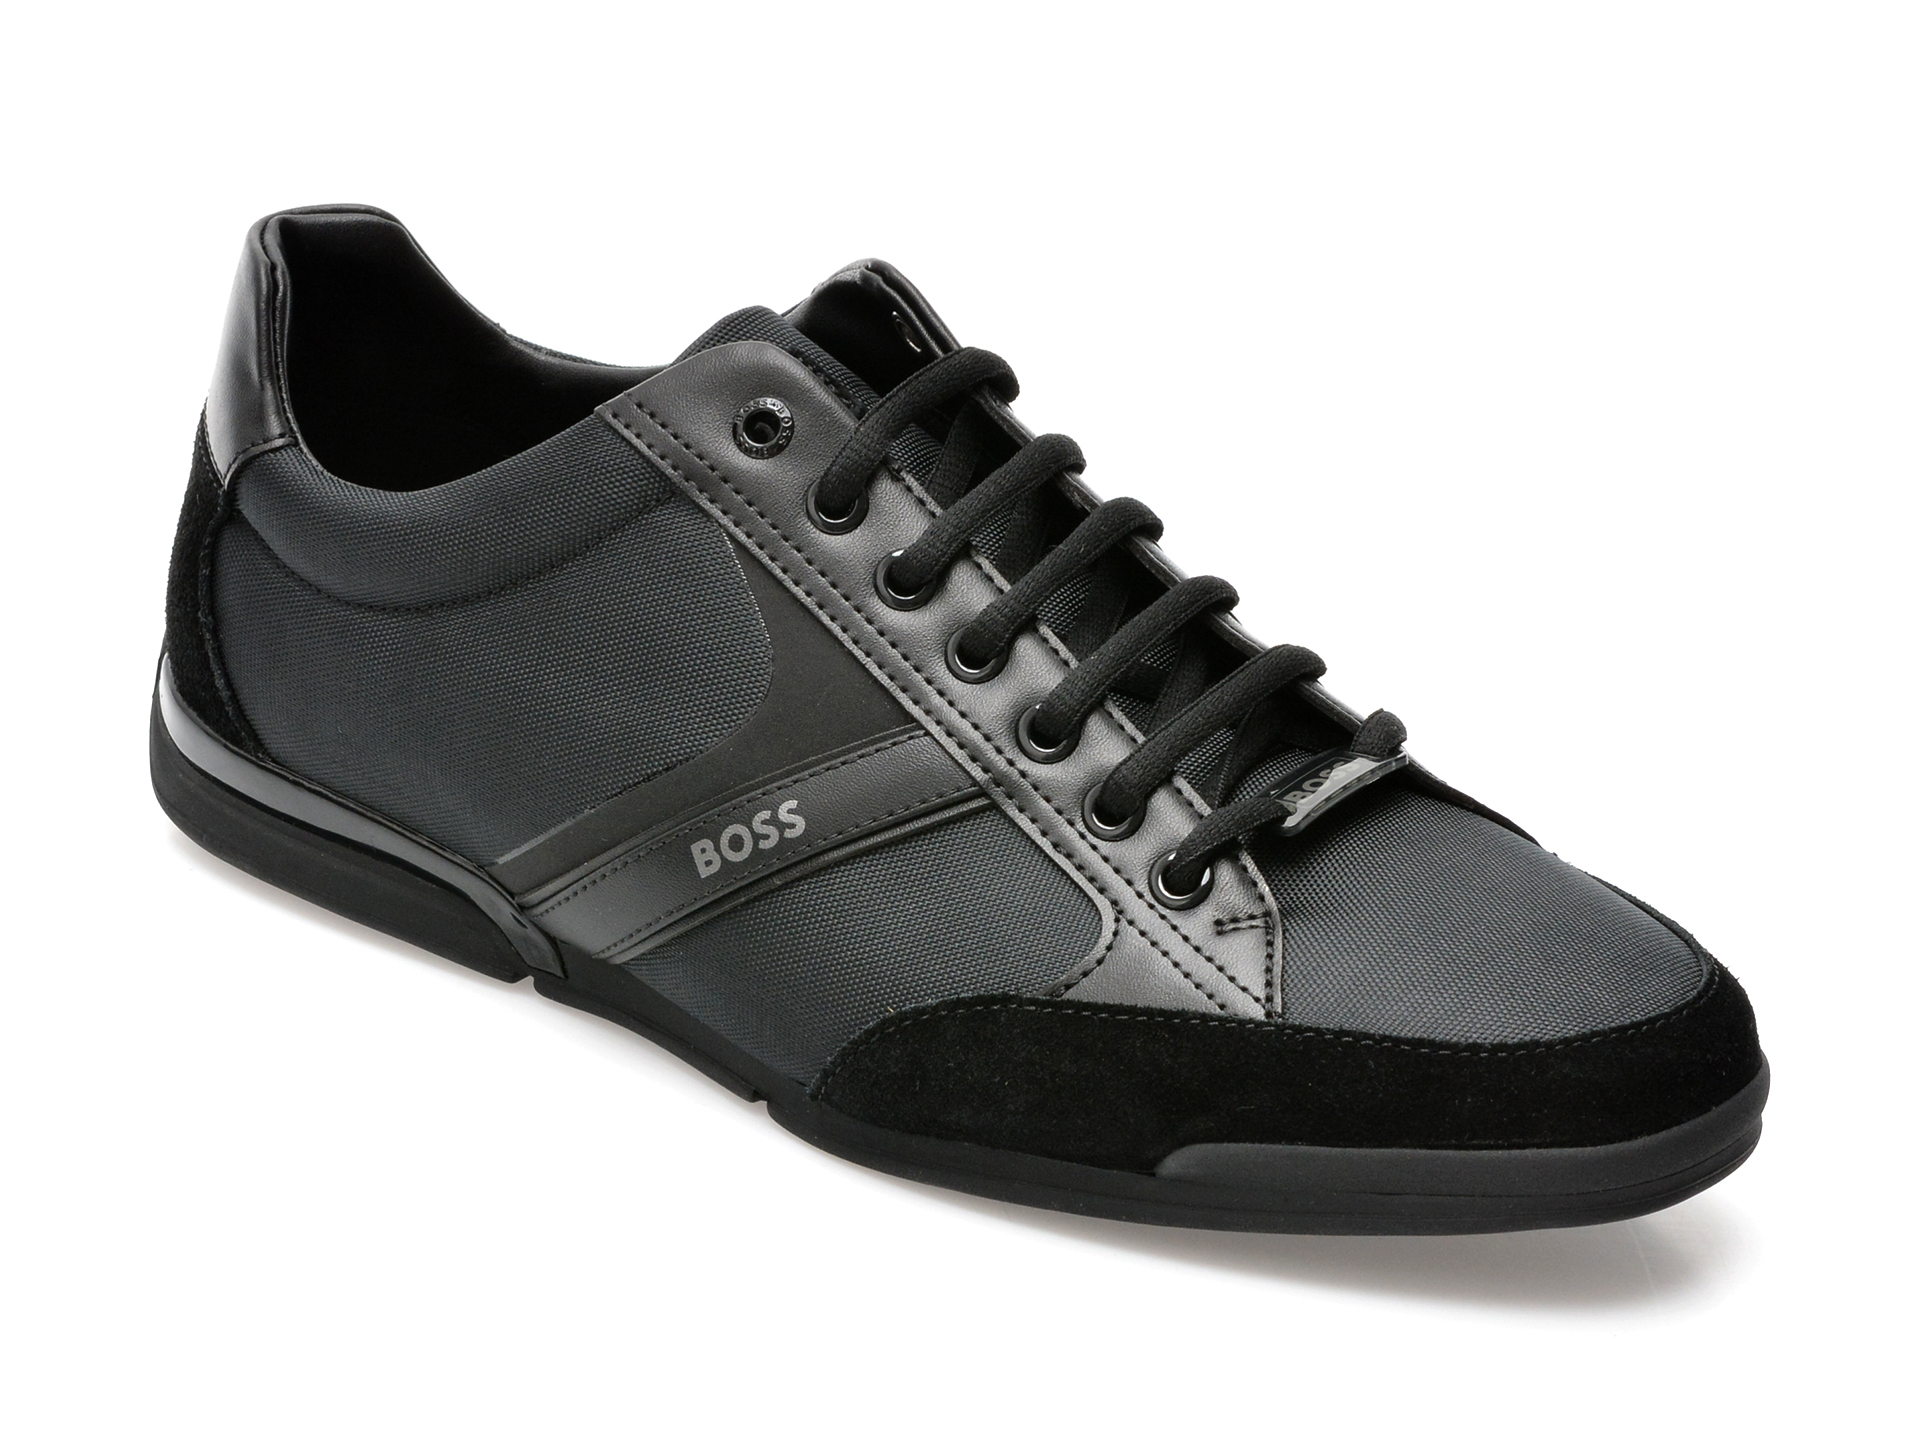 Pantofi sport HUGO BOSS negri, 1235, din material textil si piele naturala /barbati/pantofi